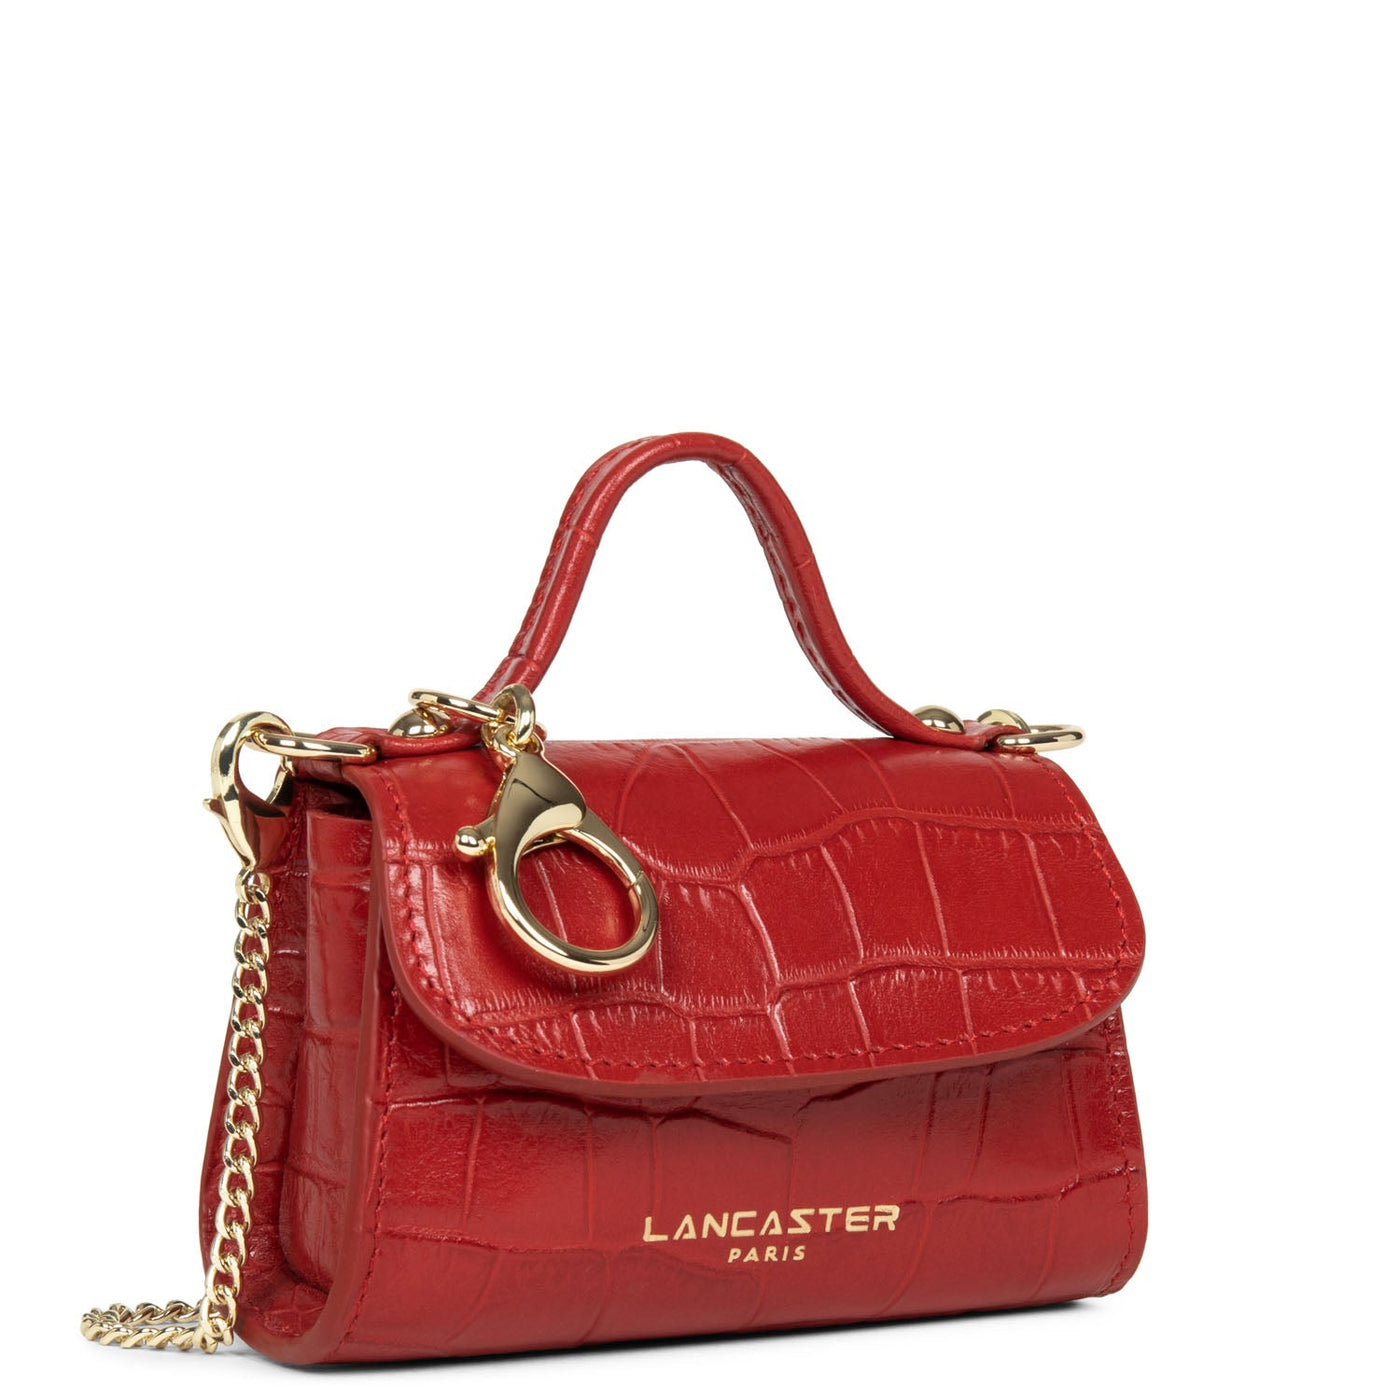 mini coin purse - exotic lézard & croco cn #couleur_rouge